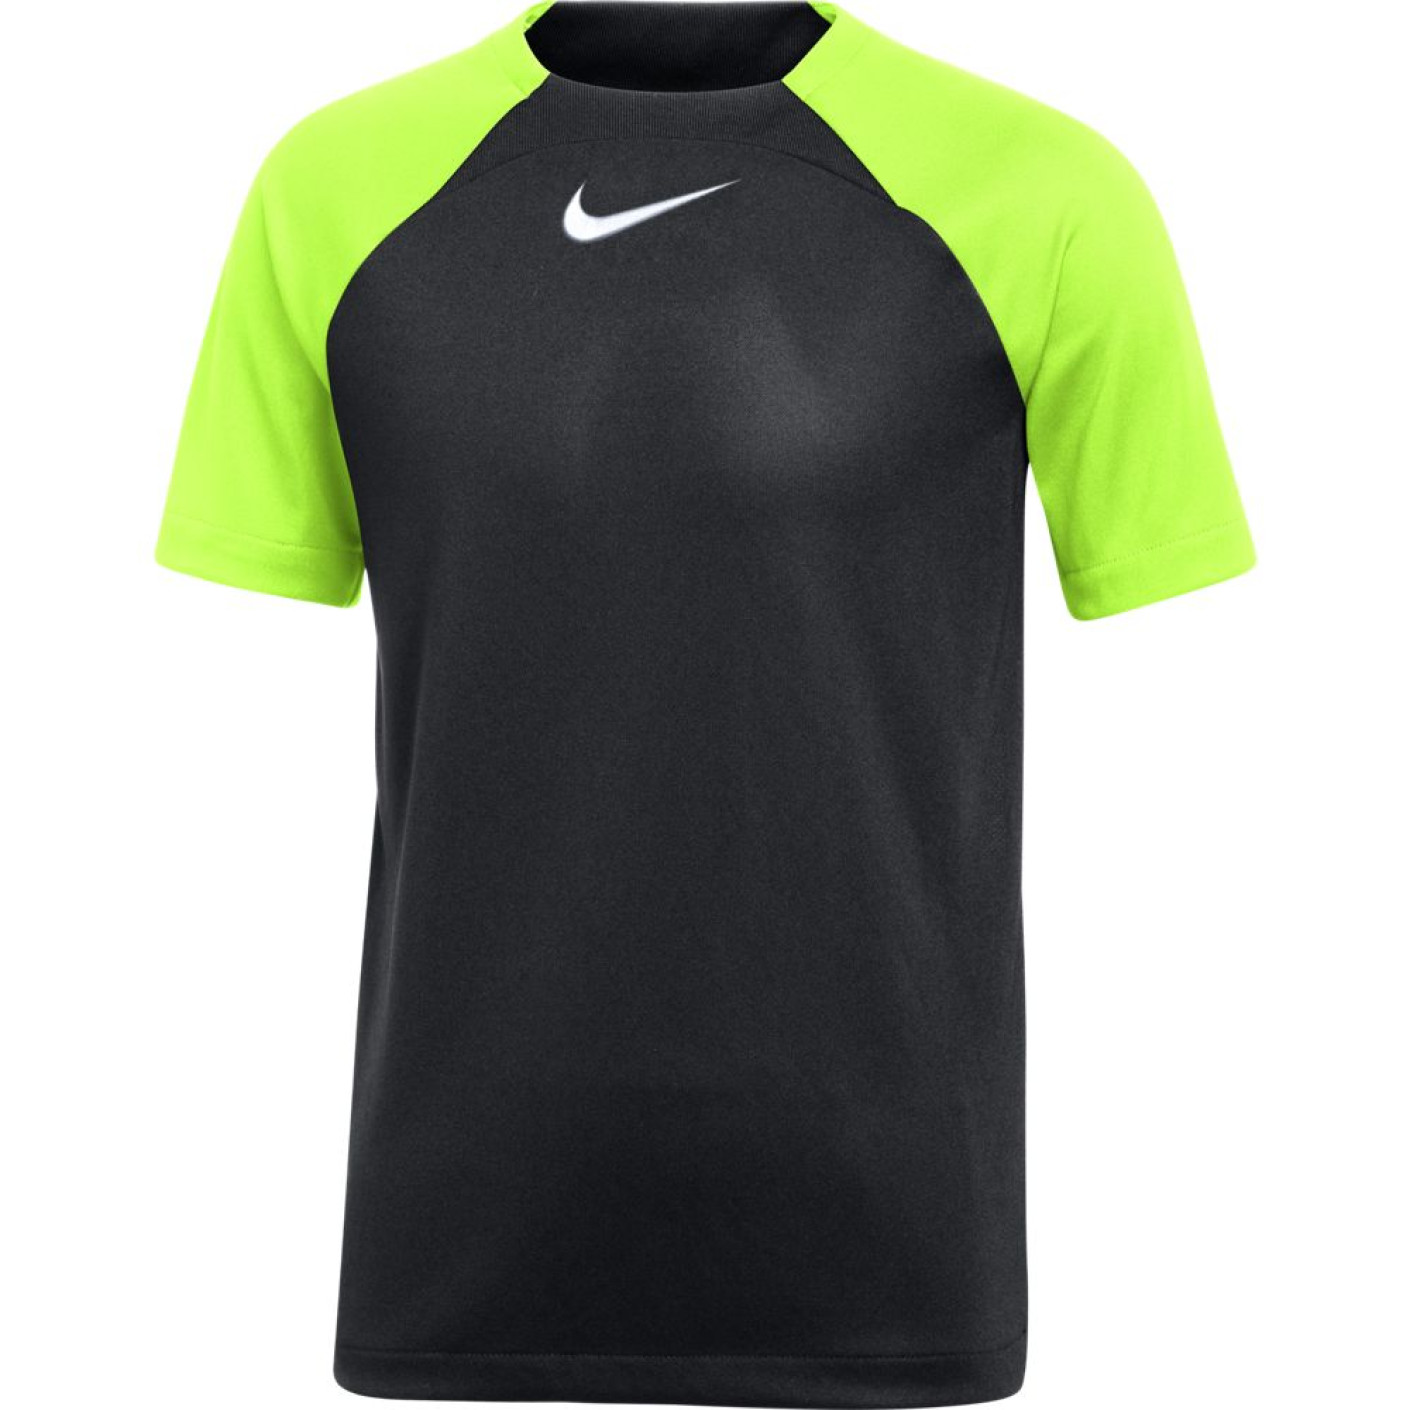 Nike Academy Pro Trainingsshirt Kids Zwart Volt